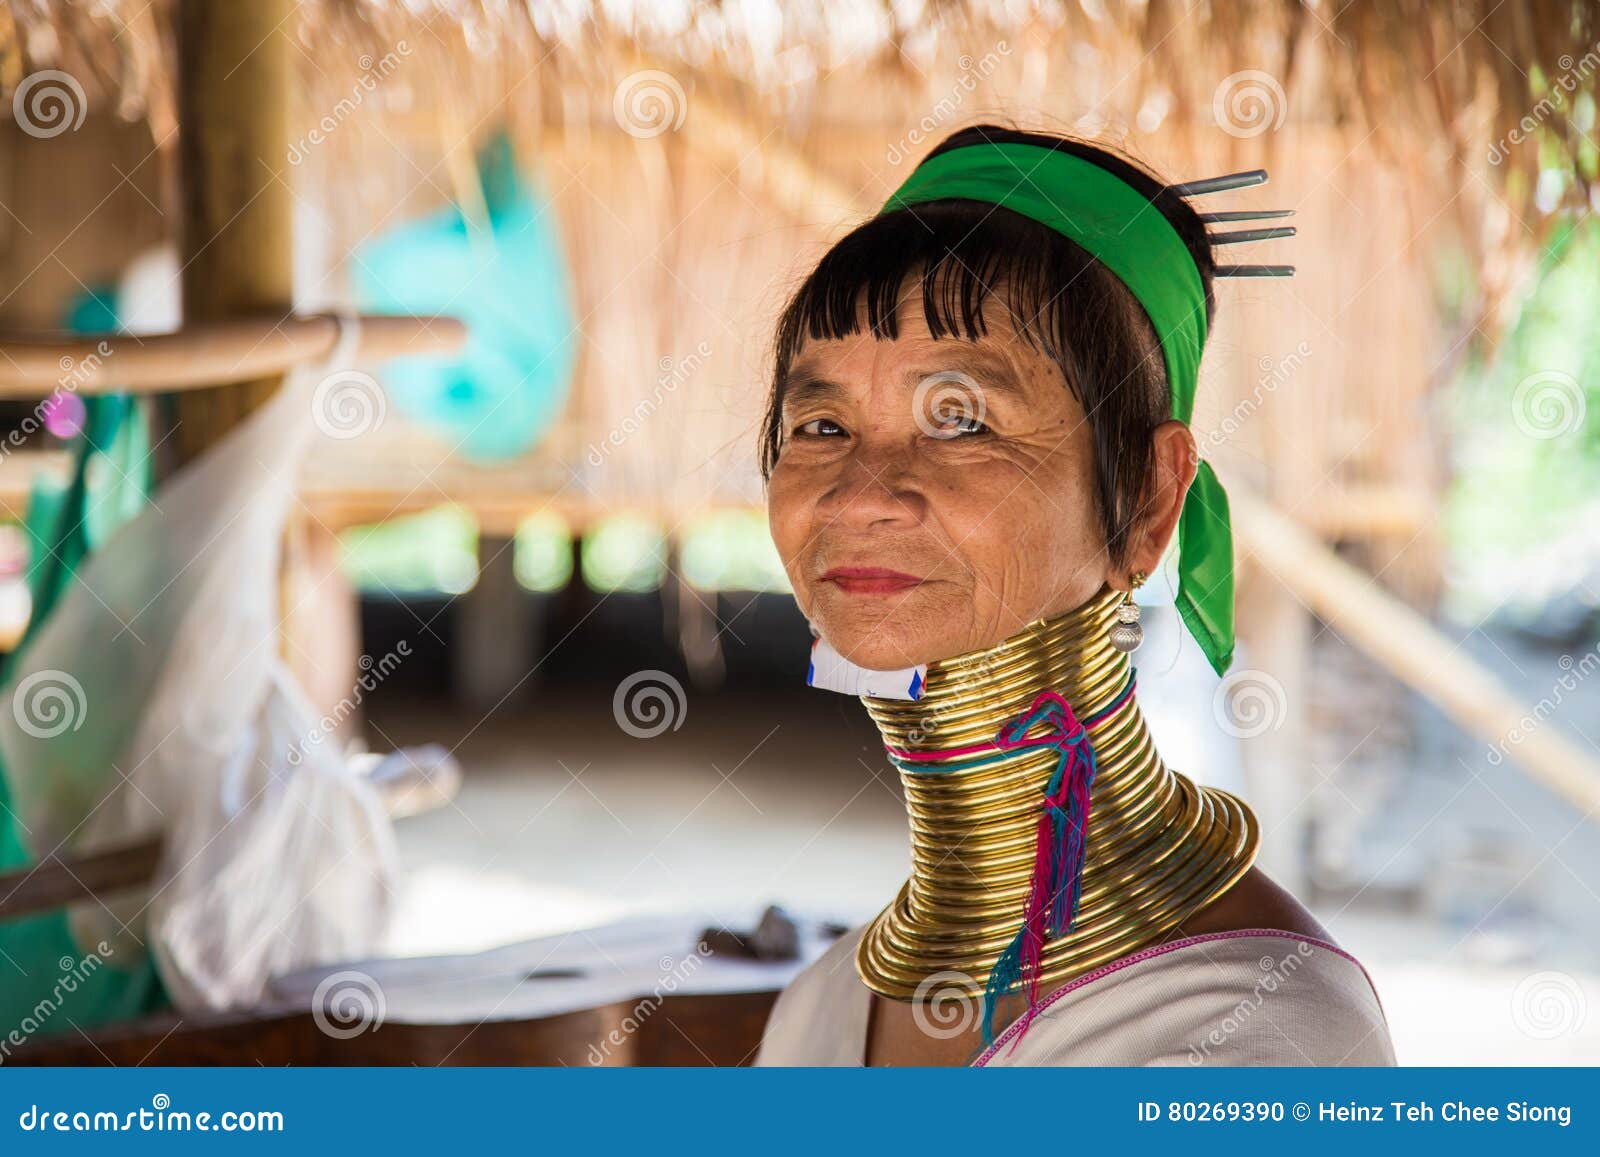 Myanmar's neck ring women | Gallery | Al Jazeera